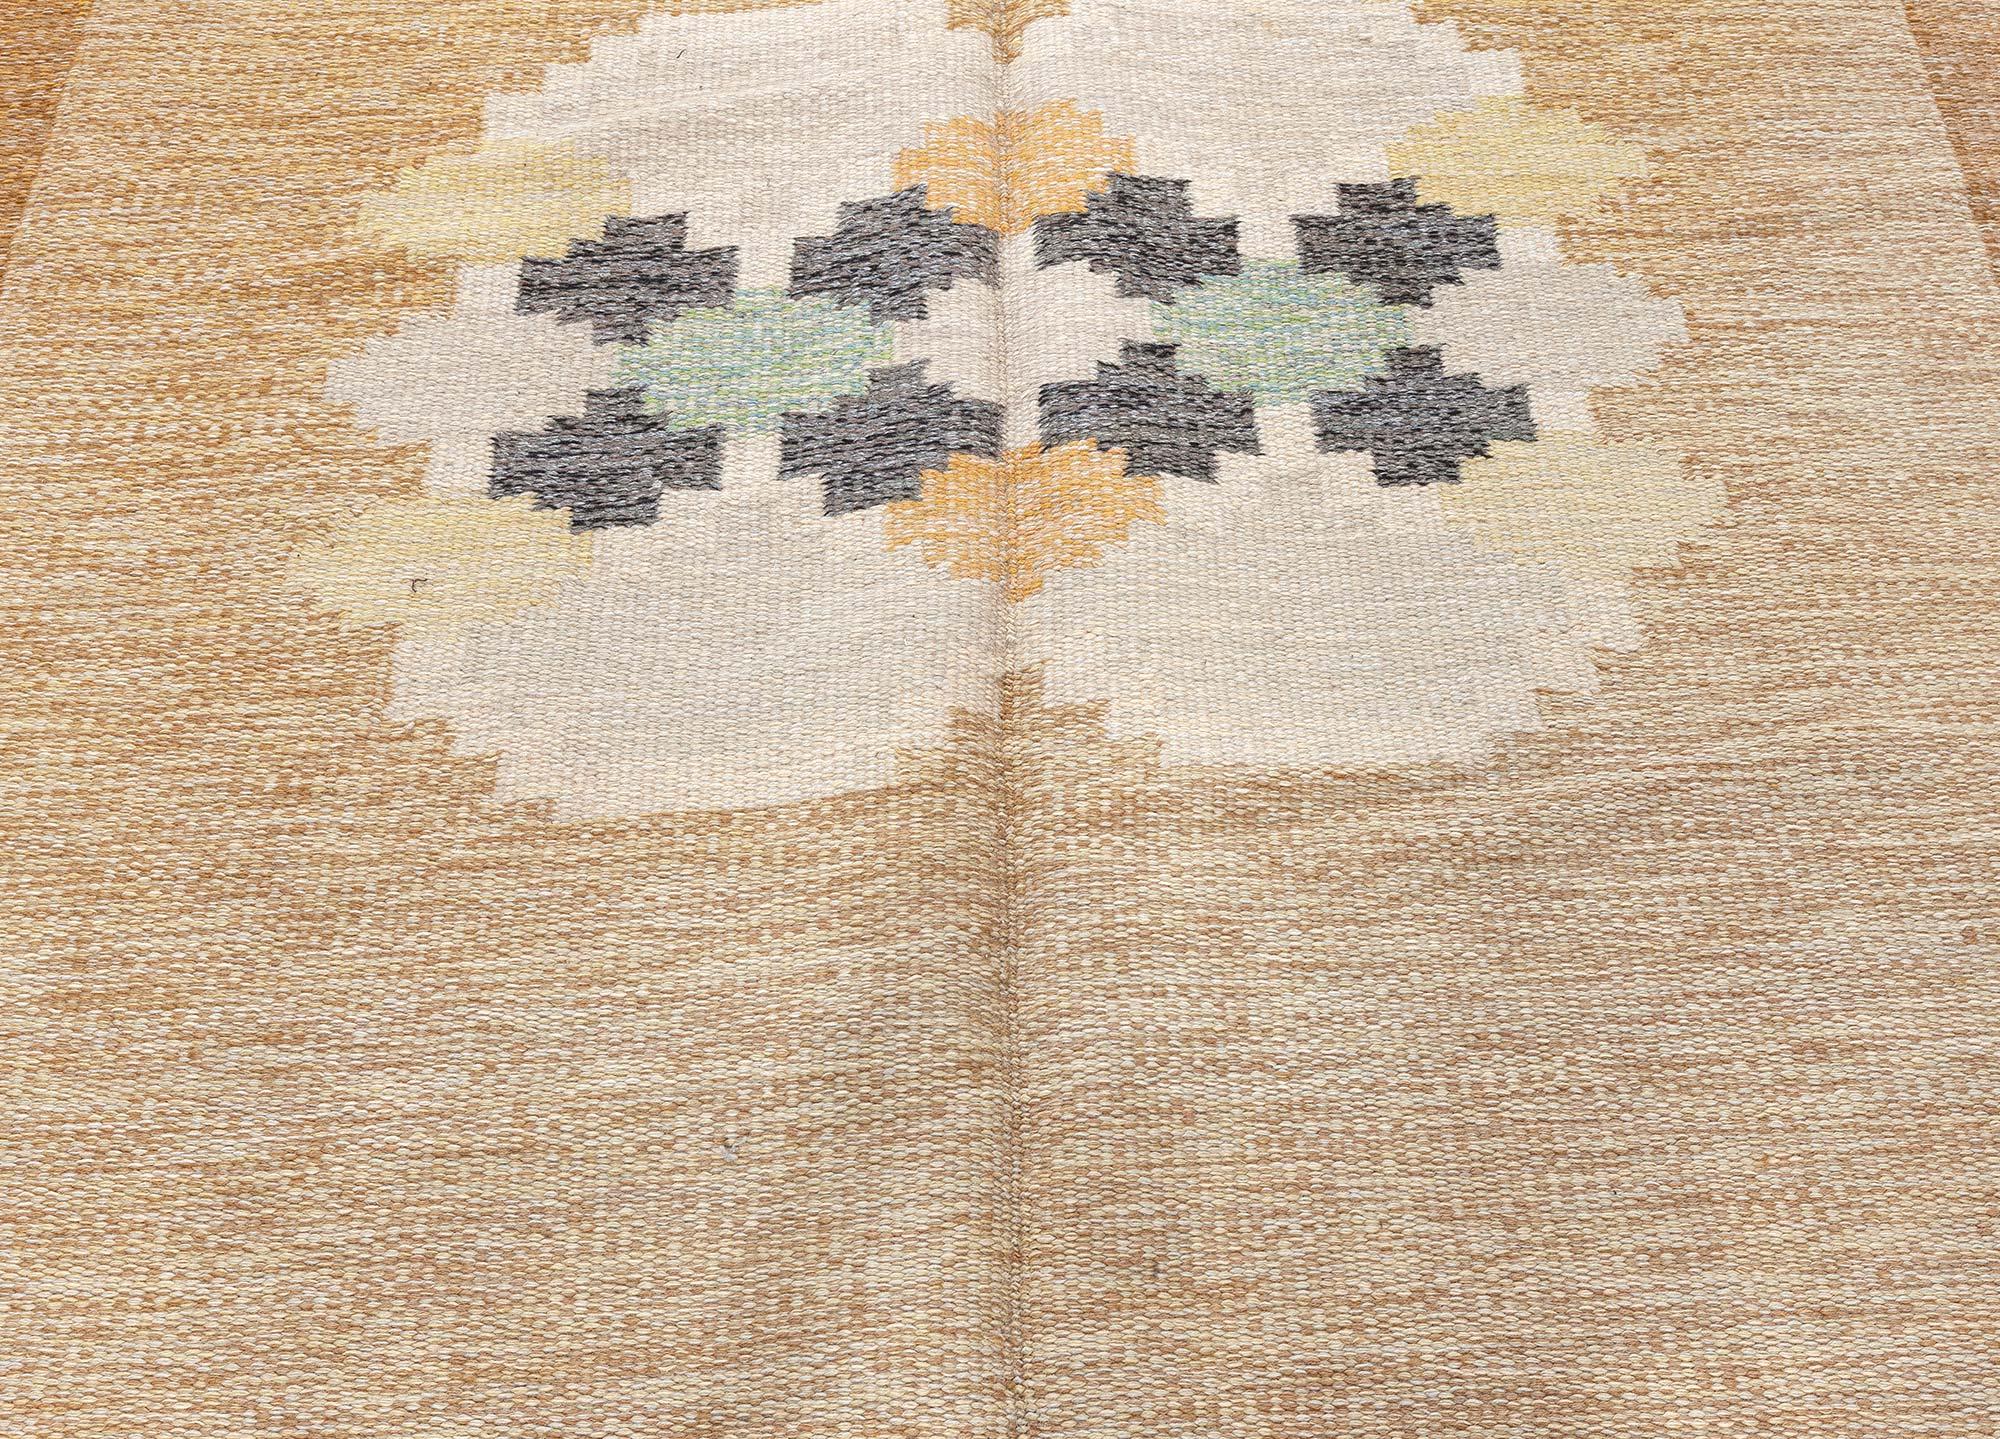 Hochwertiger schwedischer Teppich aus der Mitte des 20. Jahrhunderts von Ingegerd Silow.
Größe: 6'6